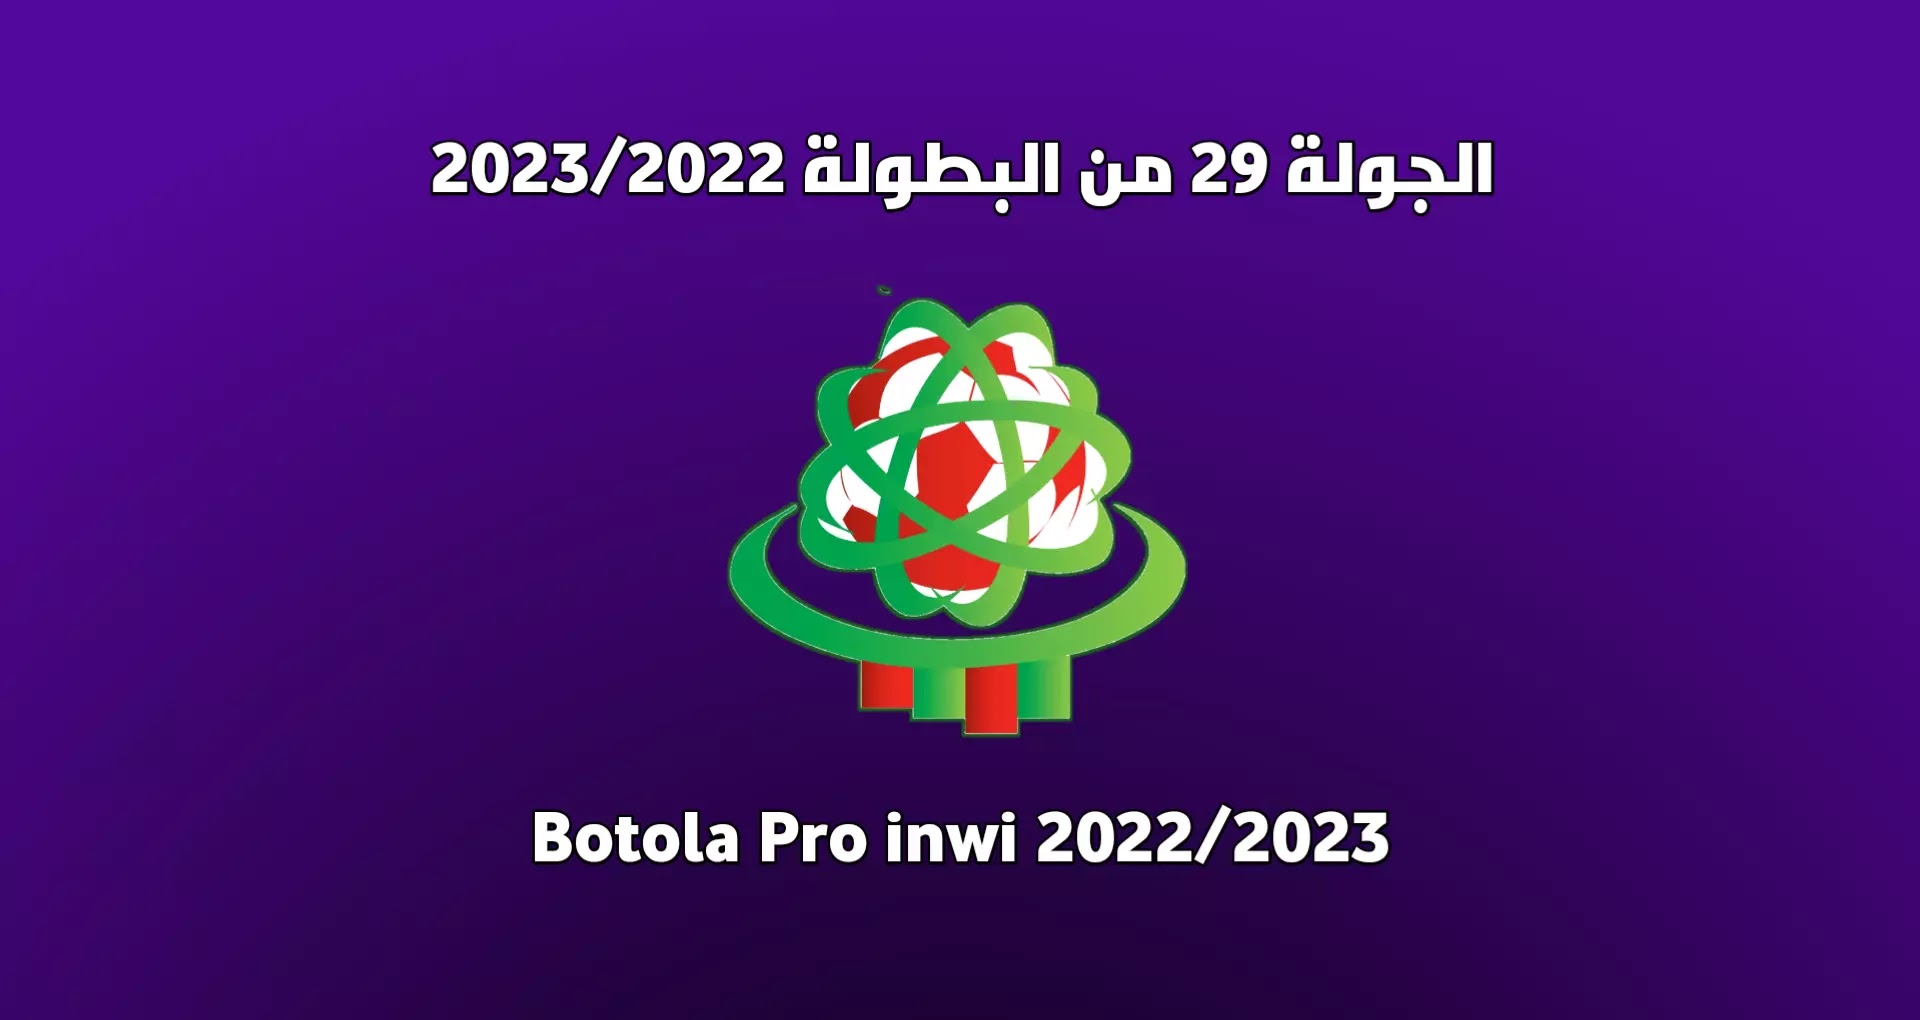 موعد مباريات الجولة 29 من البطولة المغربية 2023/2022